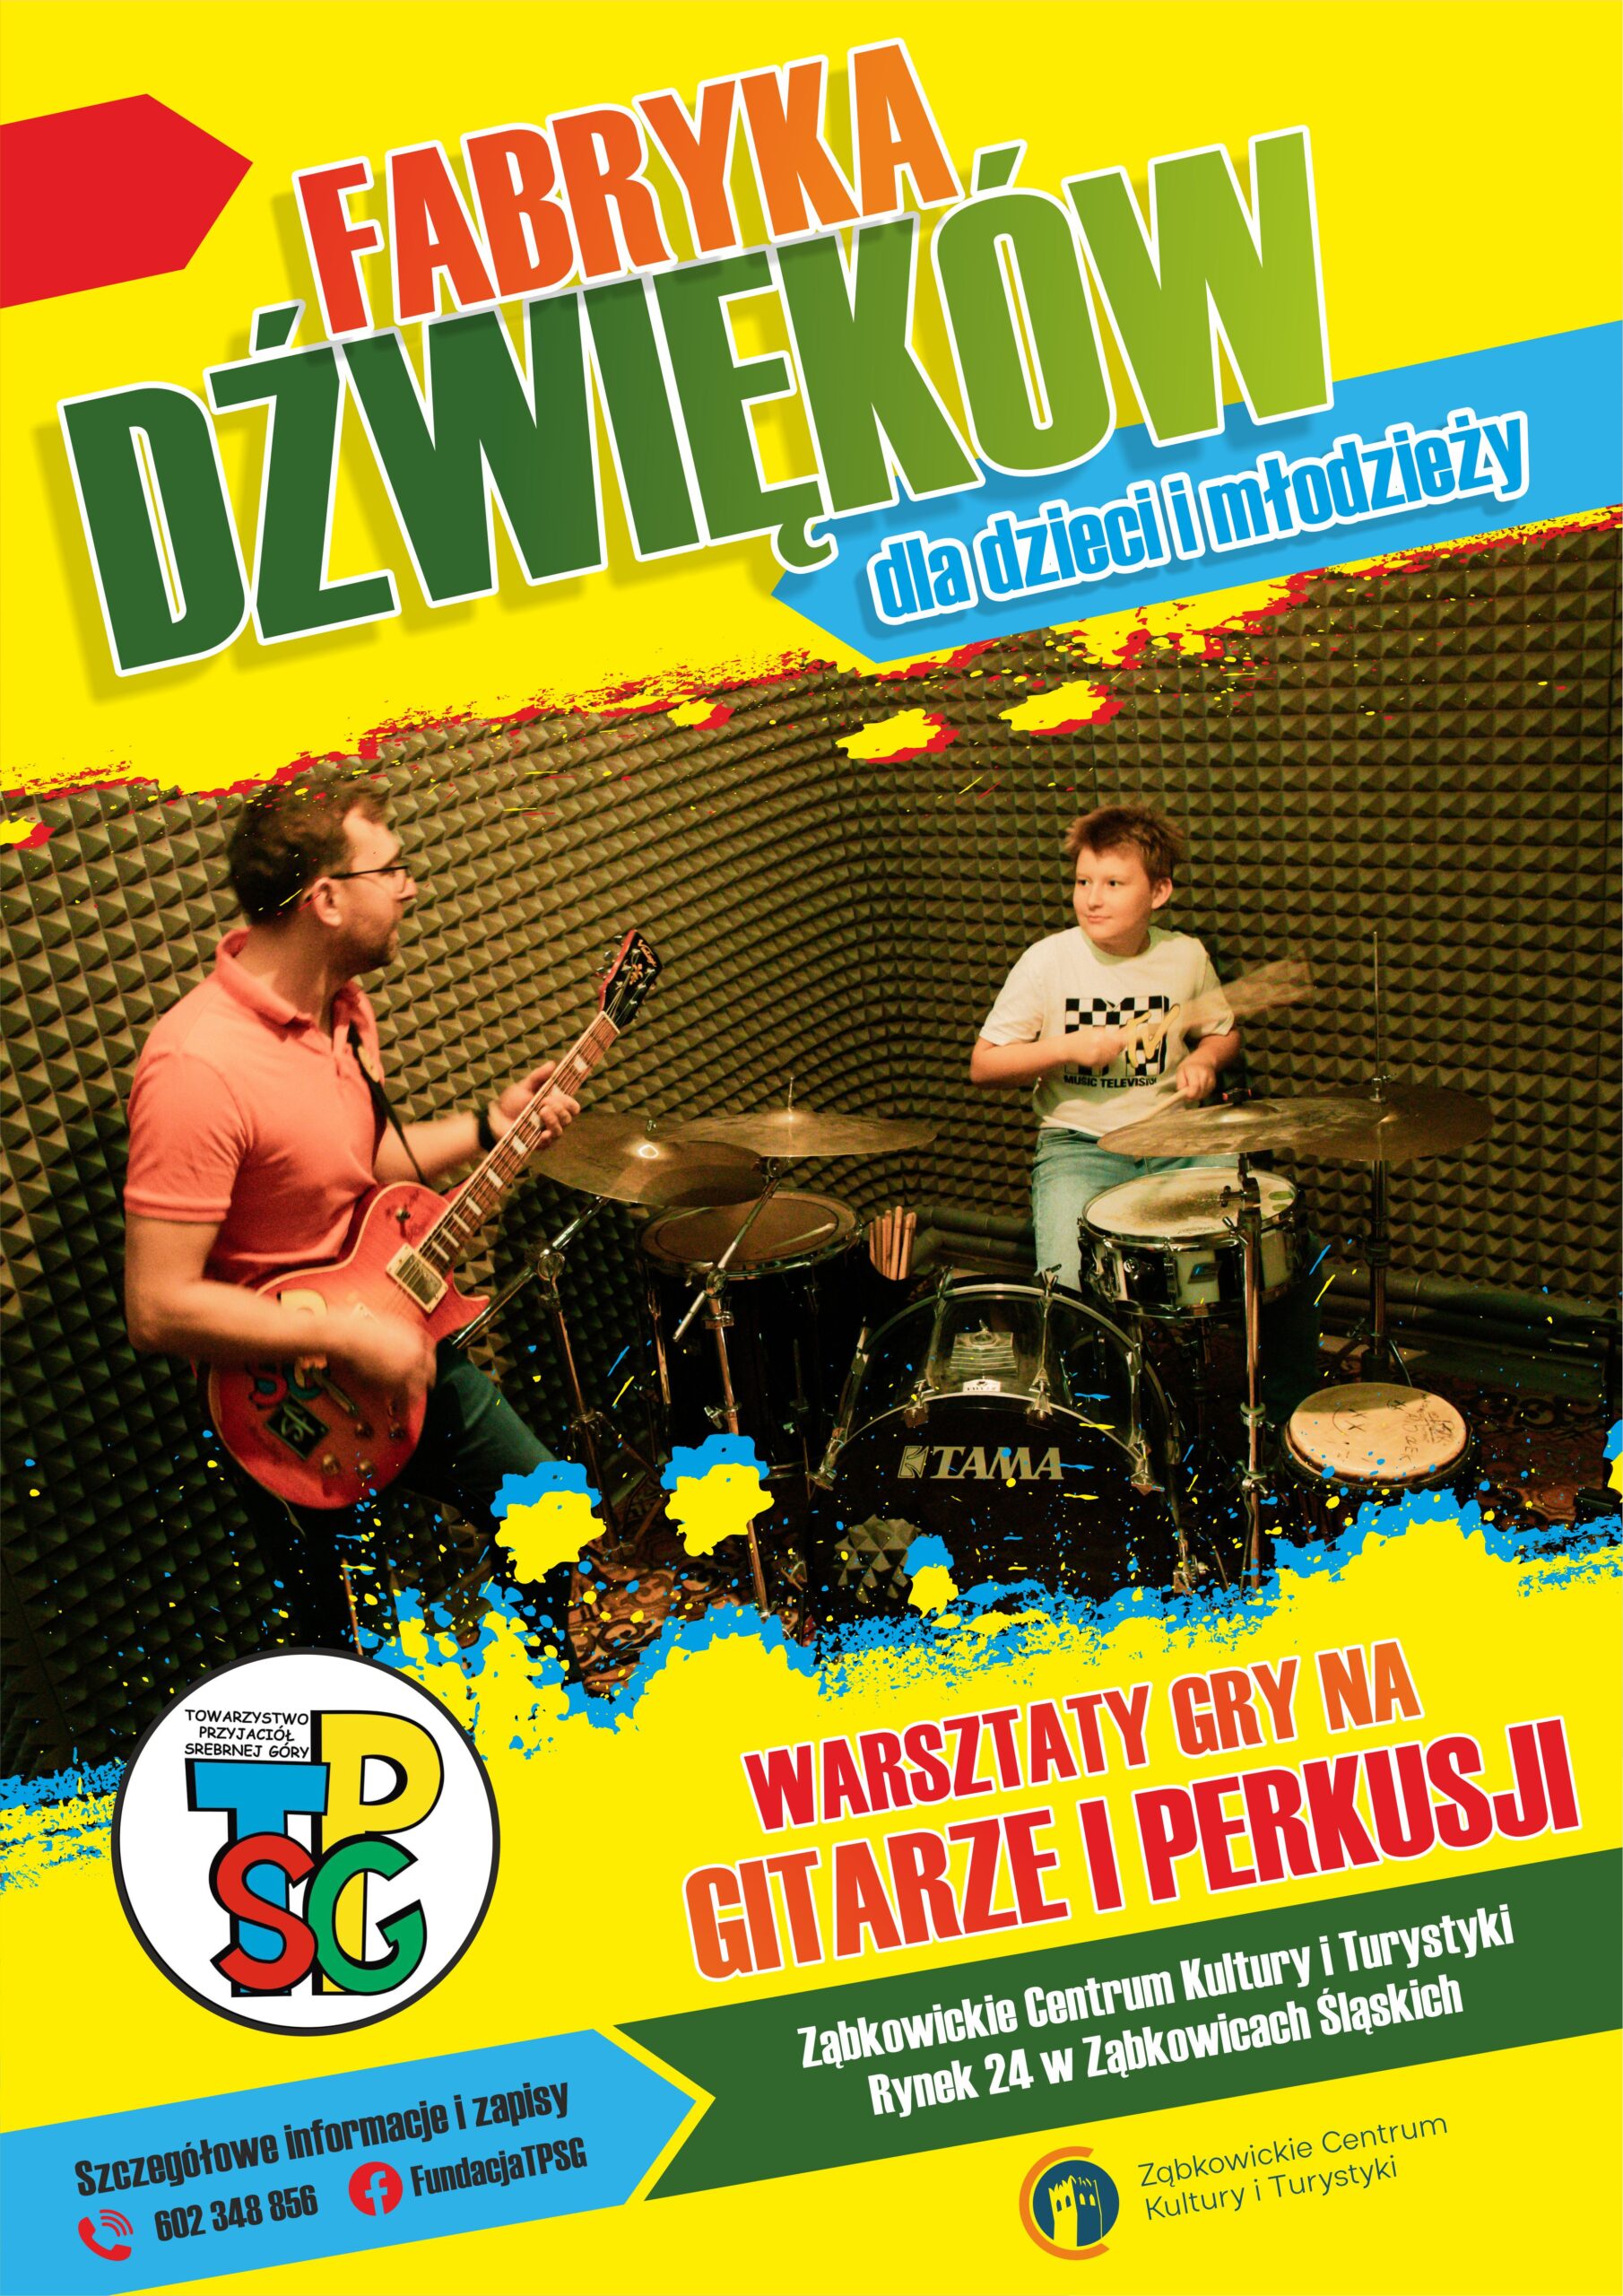 Plakat informujący o warsztatach gry na gitarze i perkusji 